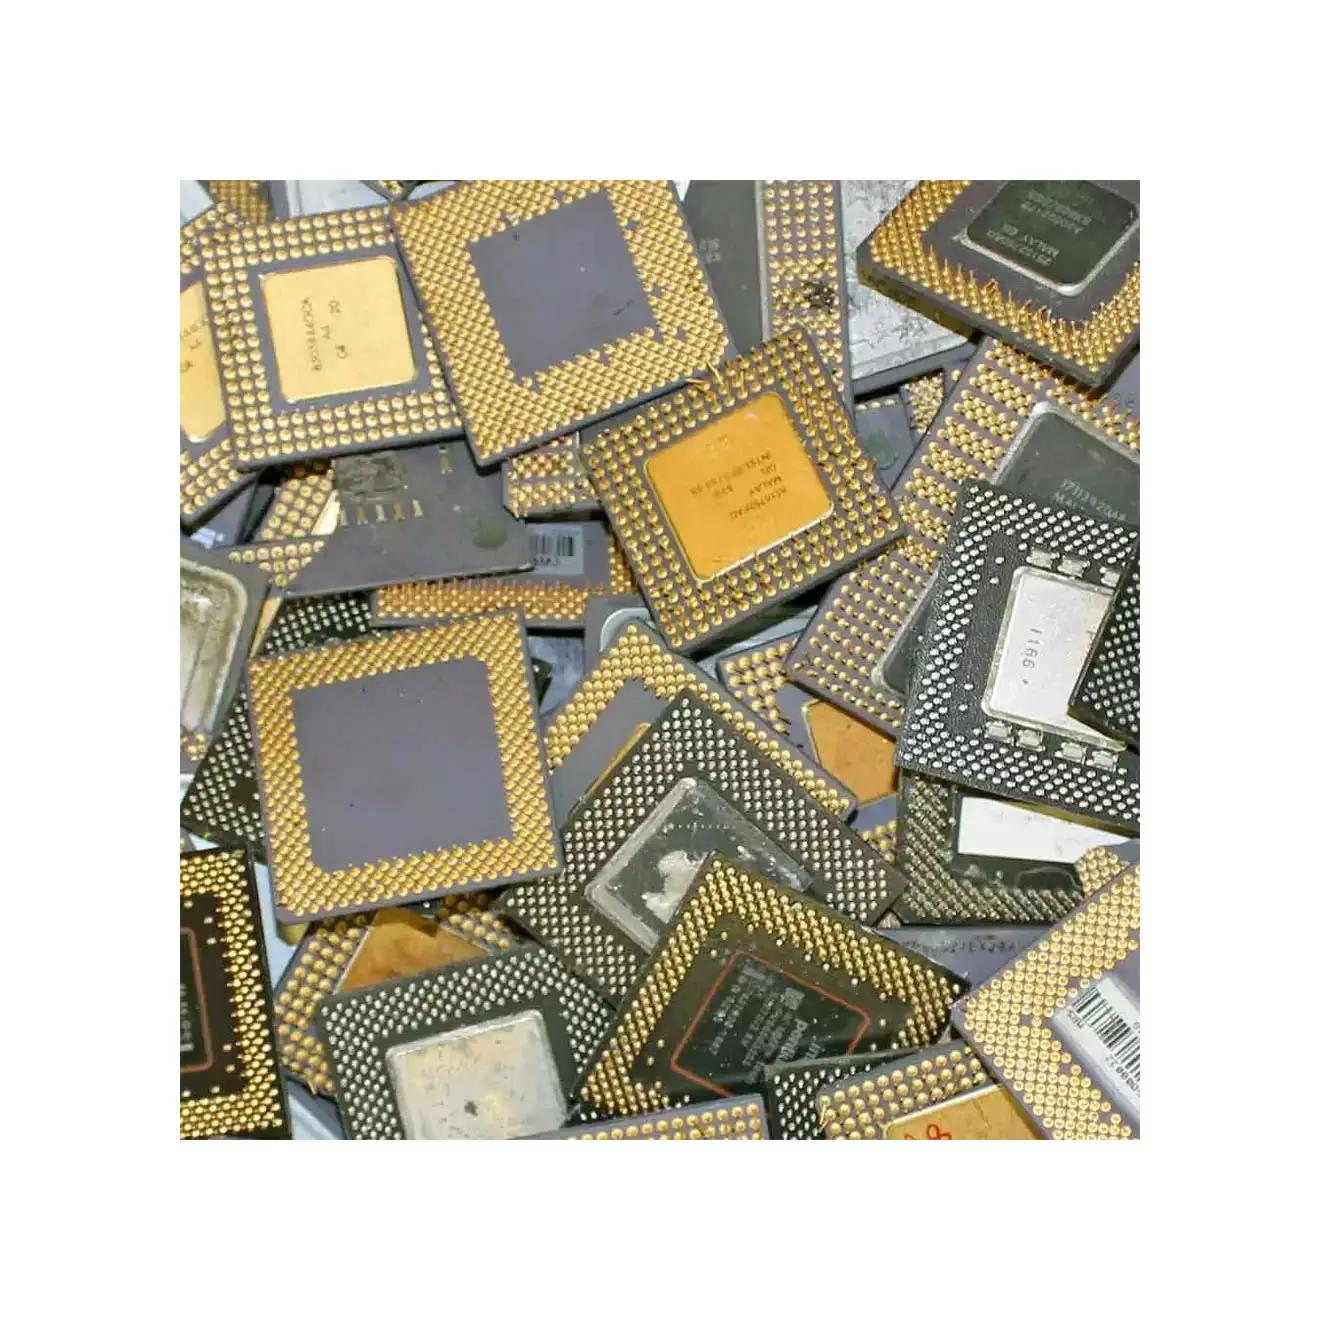 Керамический процессорный лом с золотыми штырьками/процессорный Лом/Intel Pentium Pro Ceramic по оптовой цене